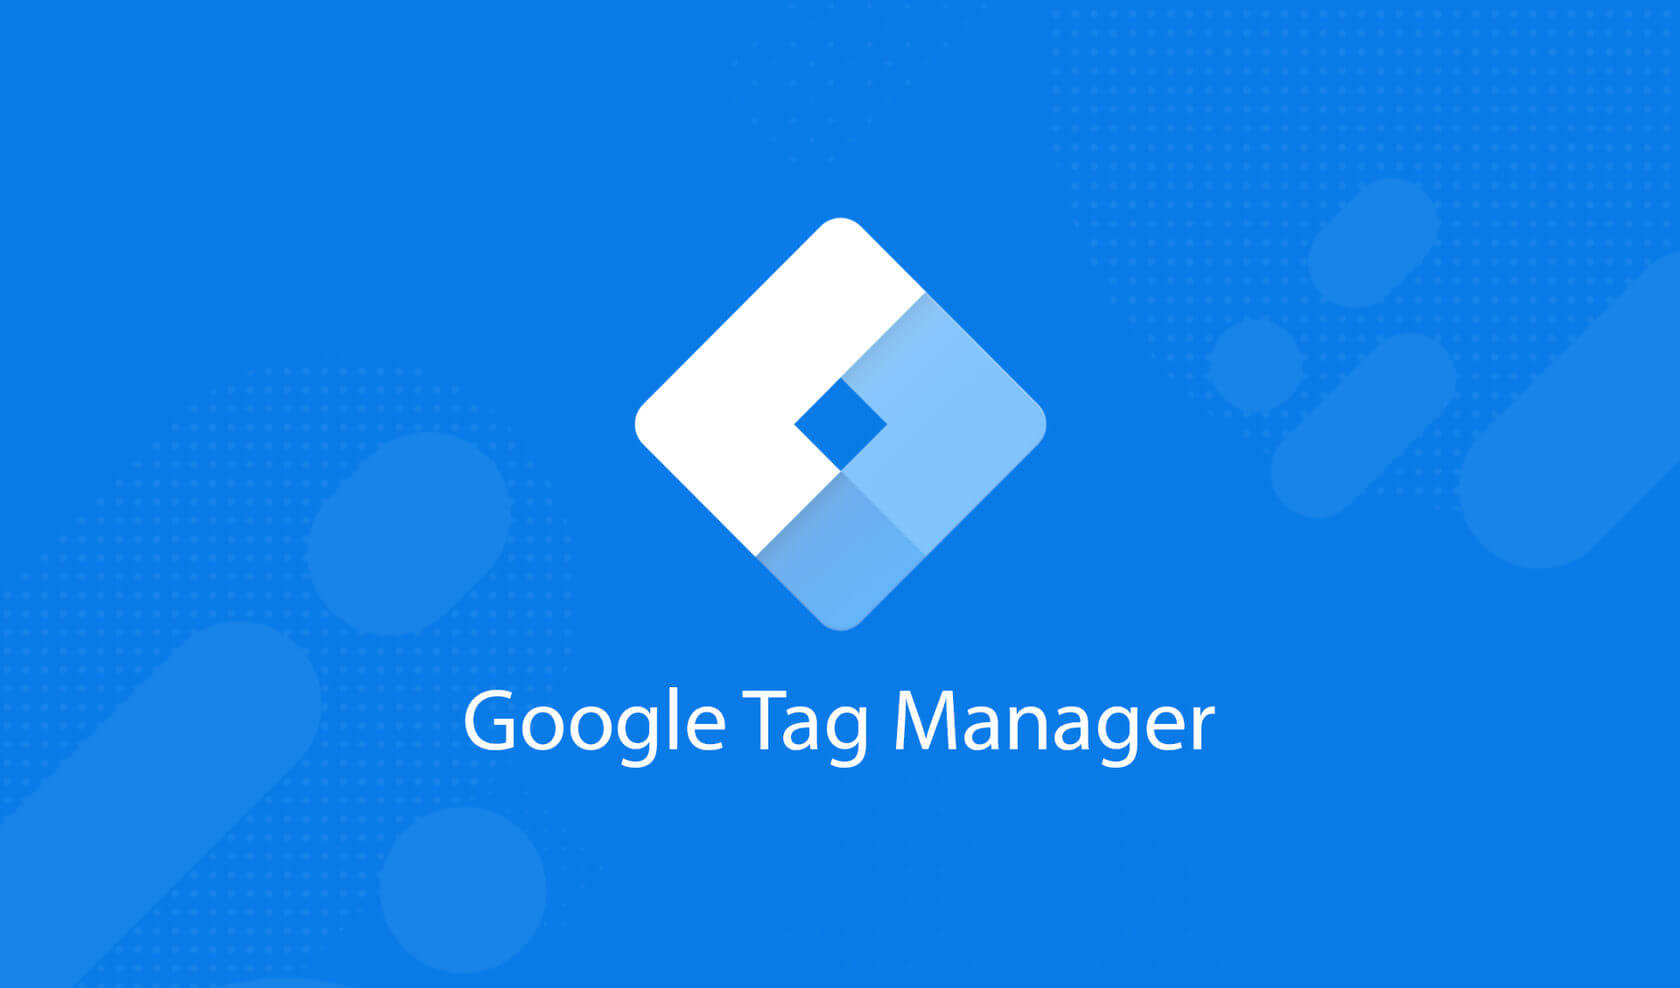 Google Tag Manager запустил галерею шаблонов для тегов партнеров